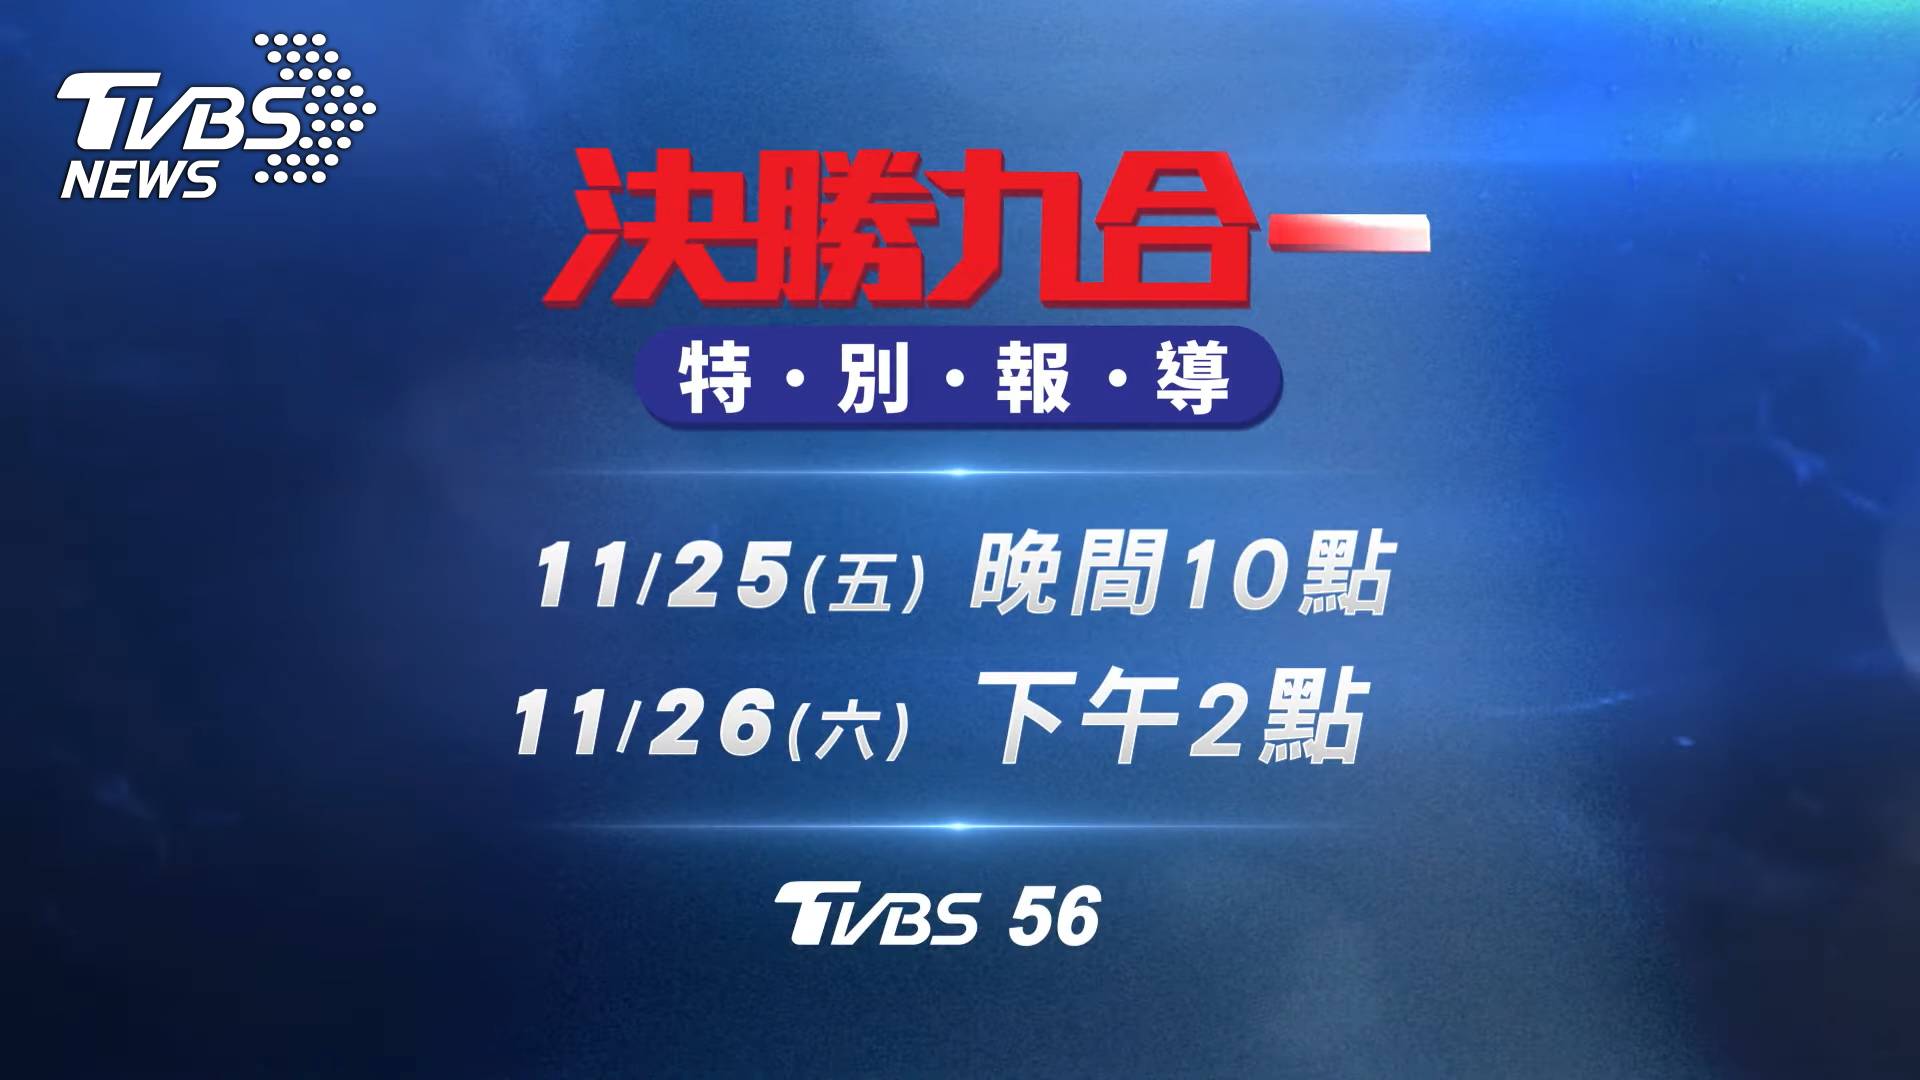 TVBS 56頻道25、26日連續兩日帶來「決勝九合一特別報導」 (圖/TVBS)